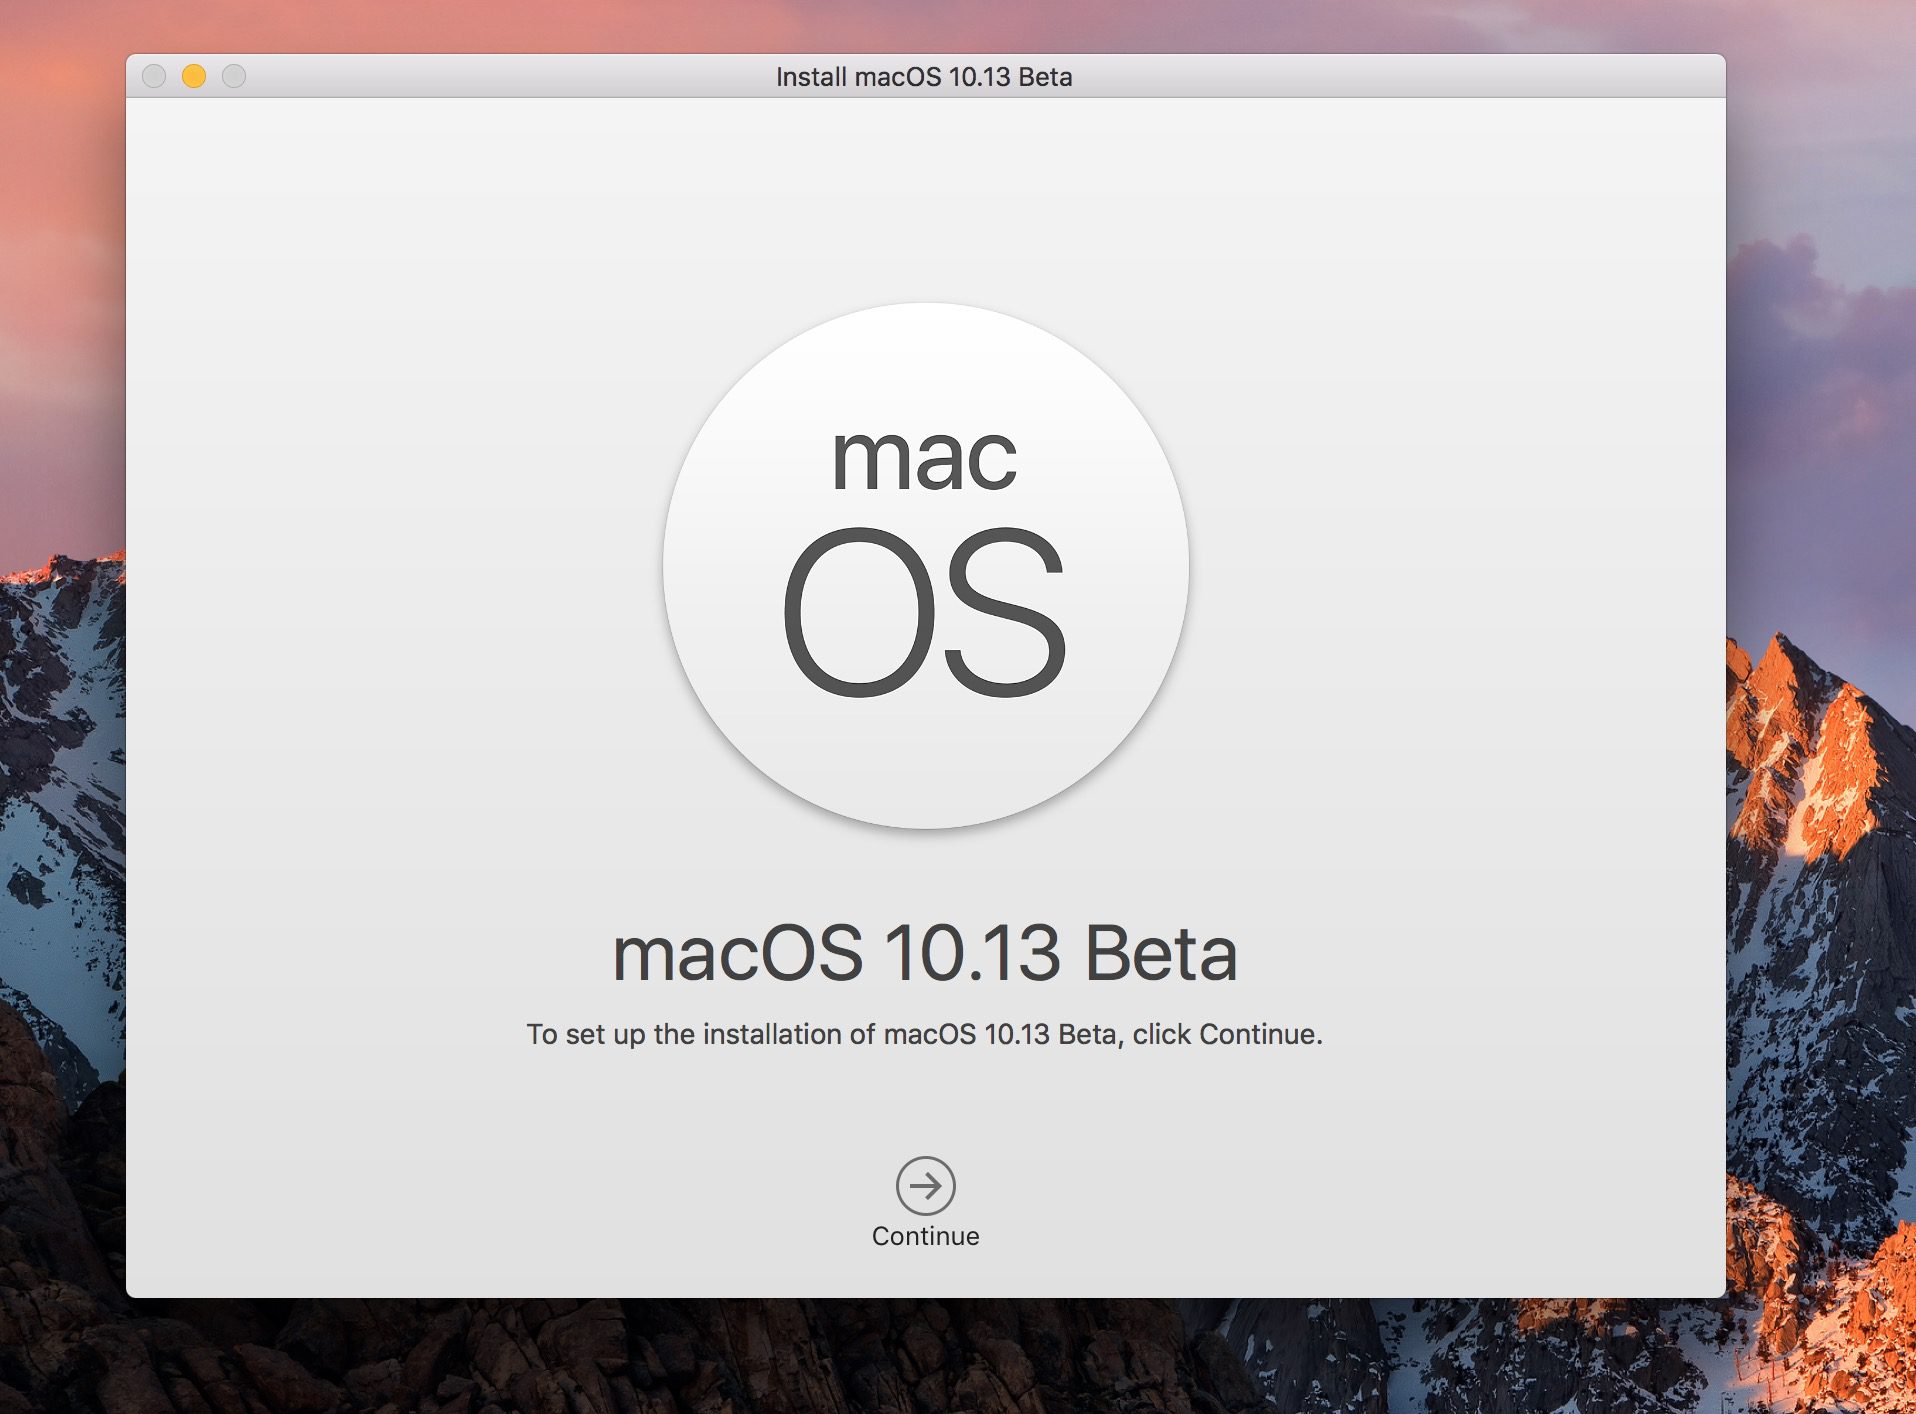 Cómo descargar e instalar macOS High Sierra Beta